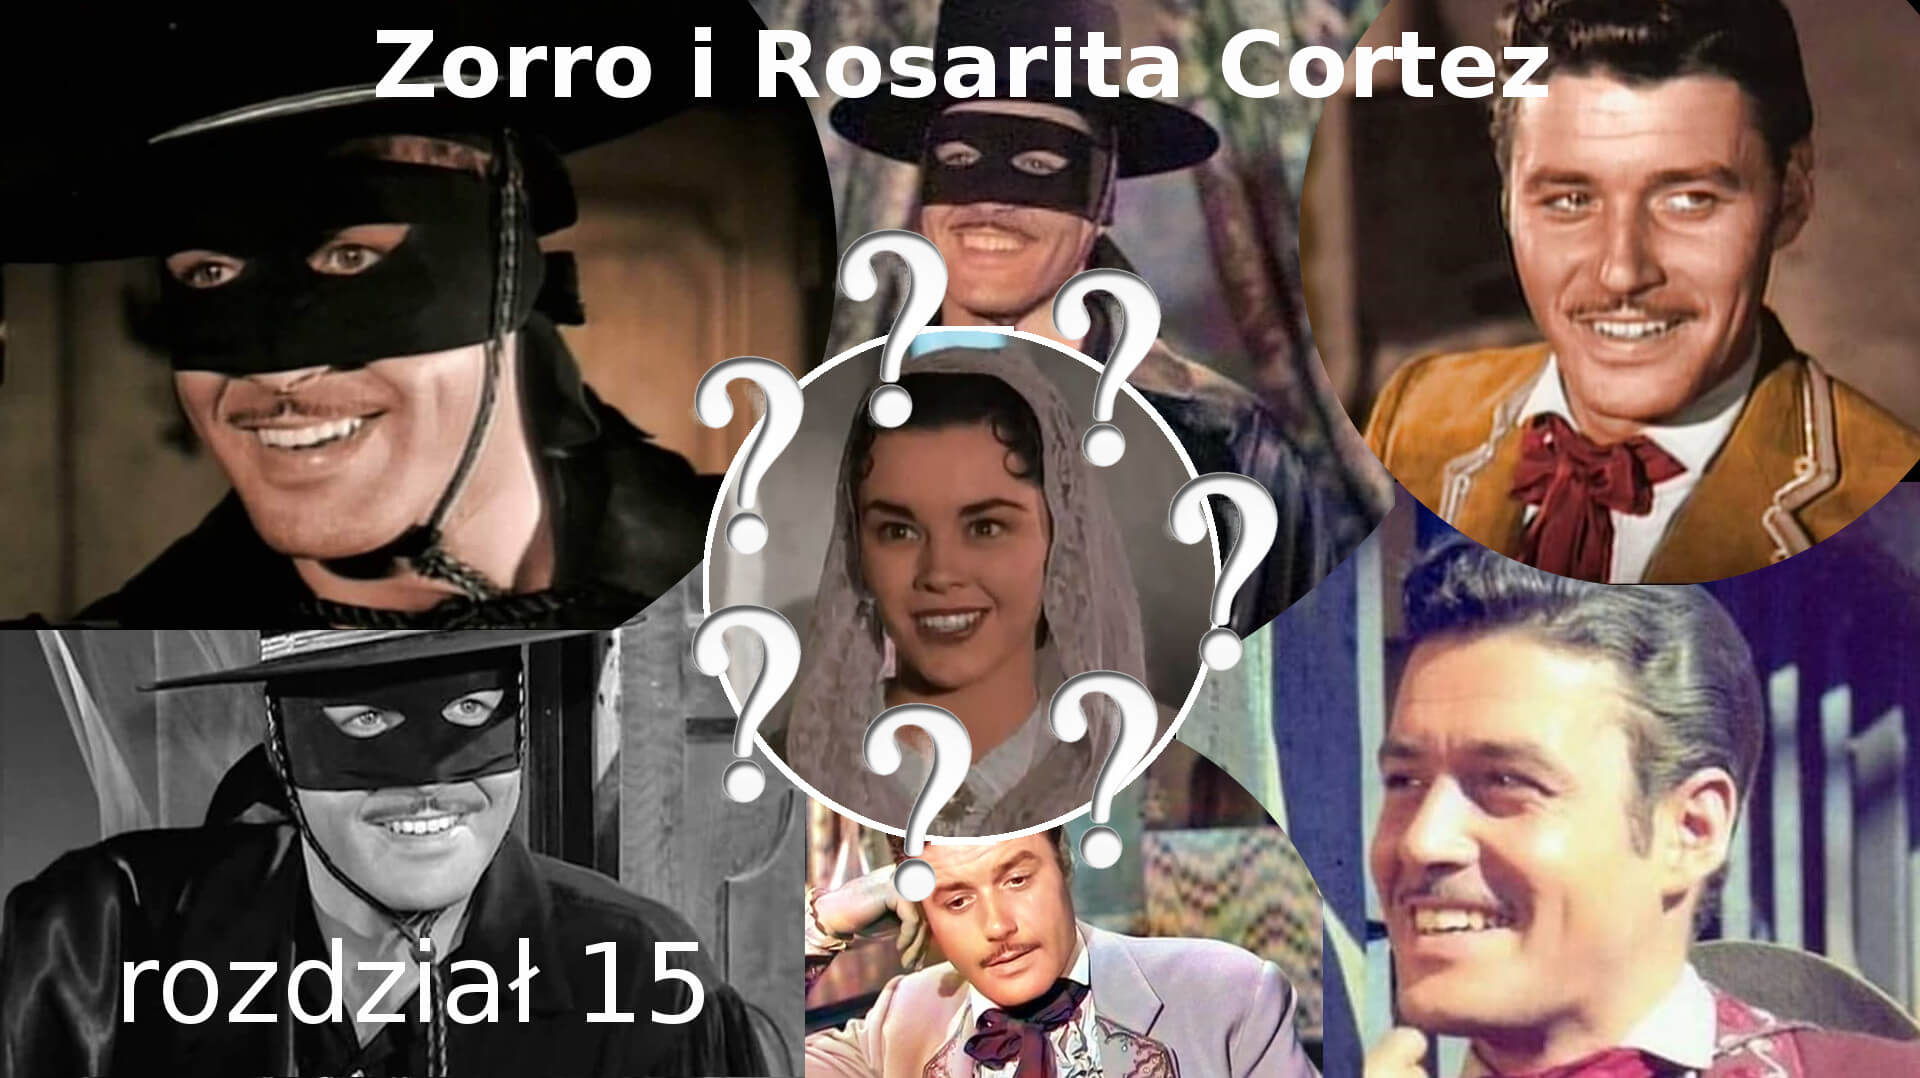 Zorro i Rosarita Cortez rozdział 15 Zorro fanfiction